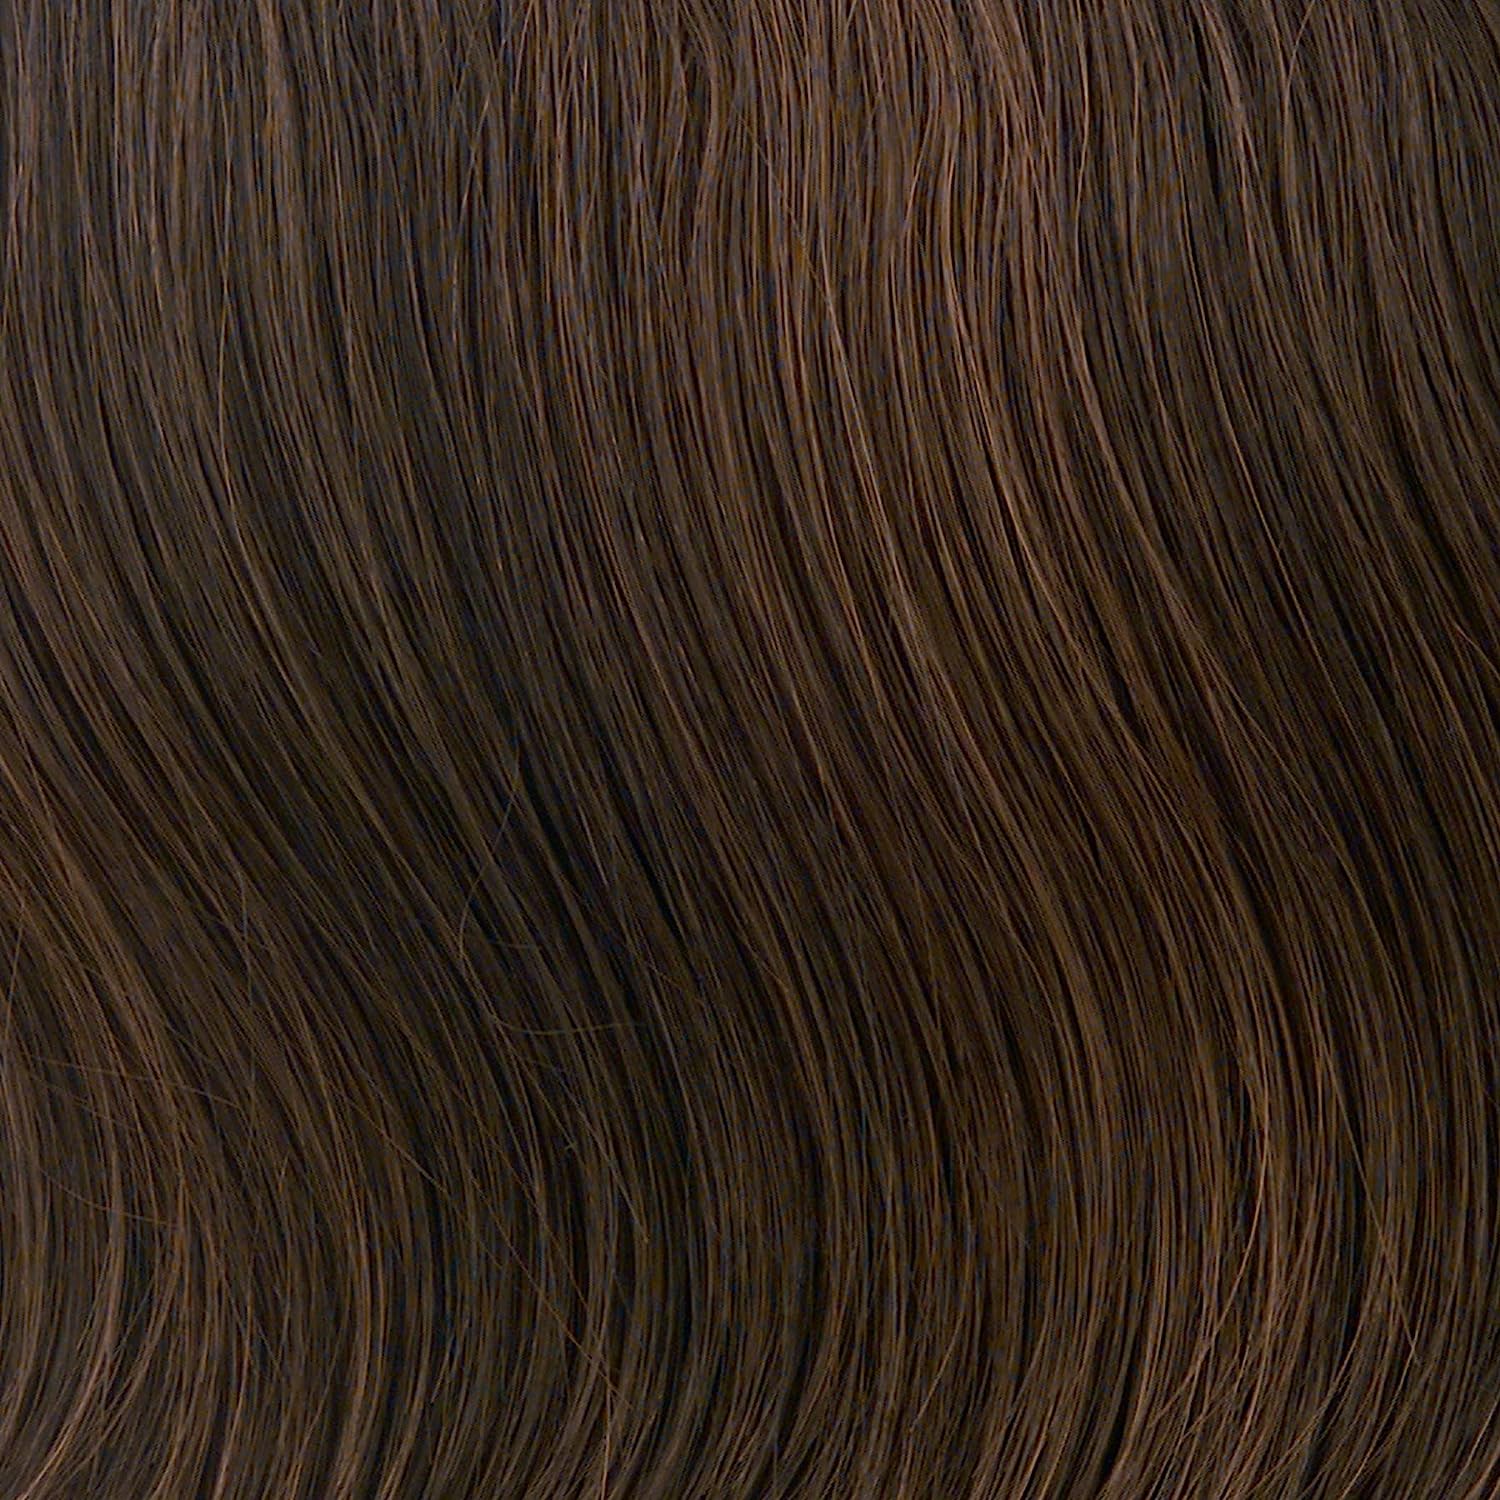 Medium Brown chestnut slight hue of auburn